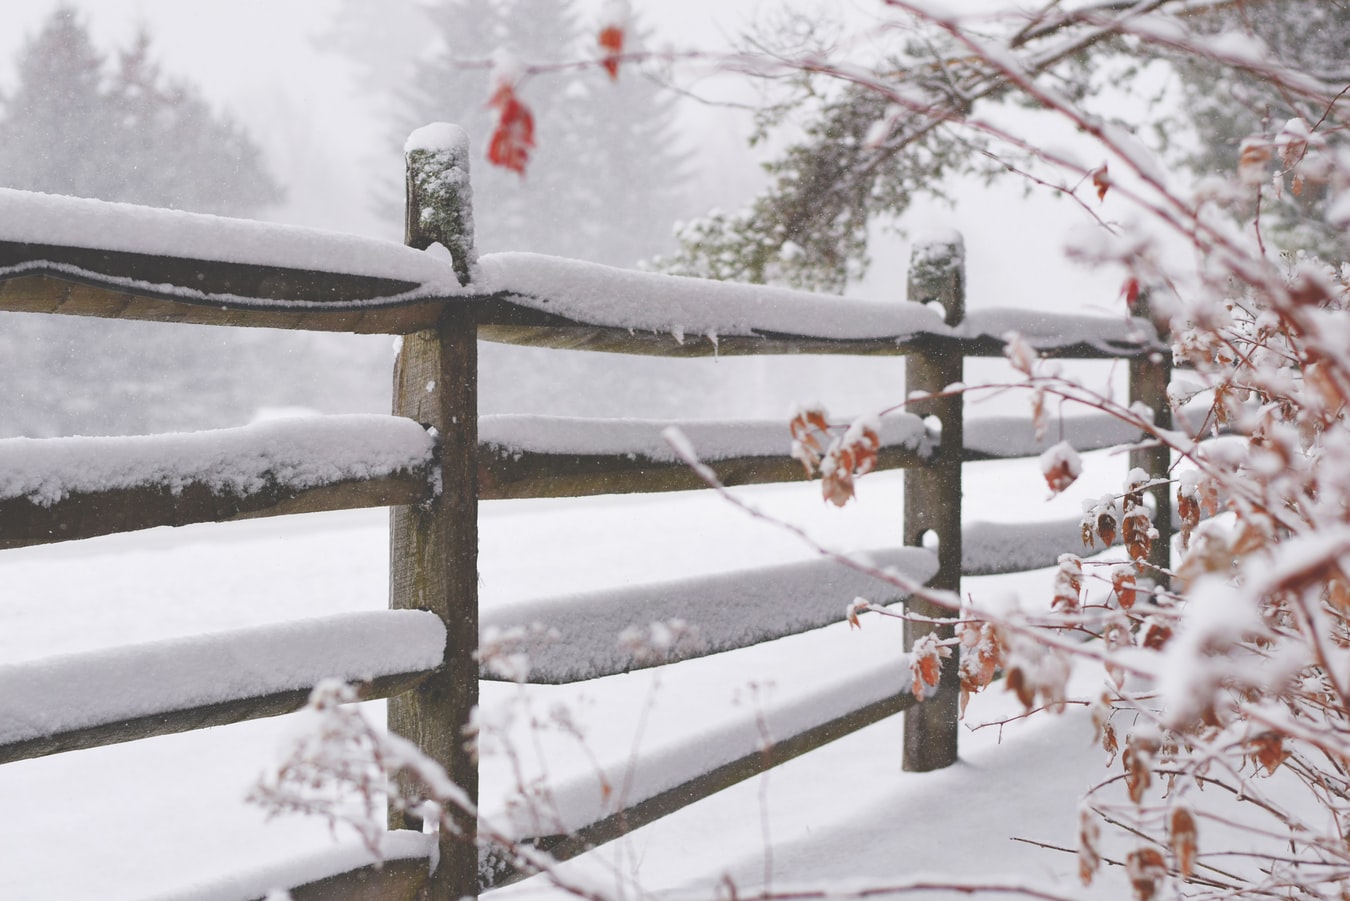 Χιόνια Χαλκιδική 2019: Το έστρωσε στην Αρναία, πανέμορφο χειμωνιάτικο σκηνικό